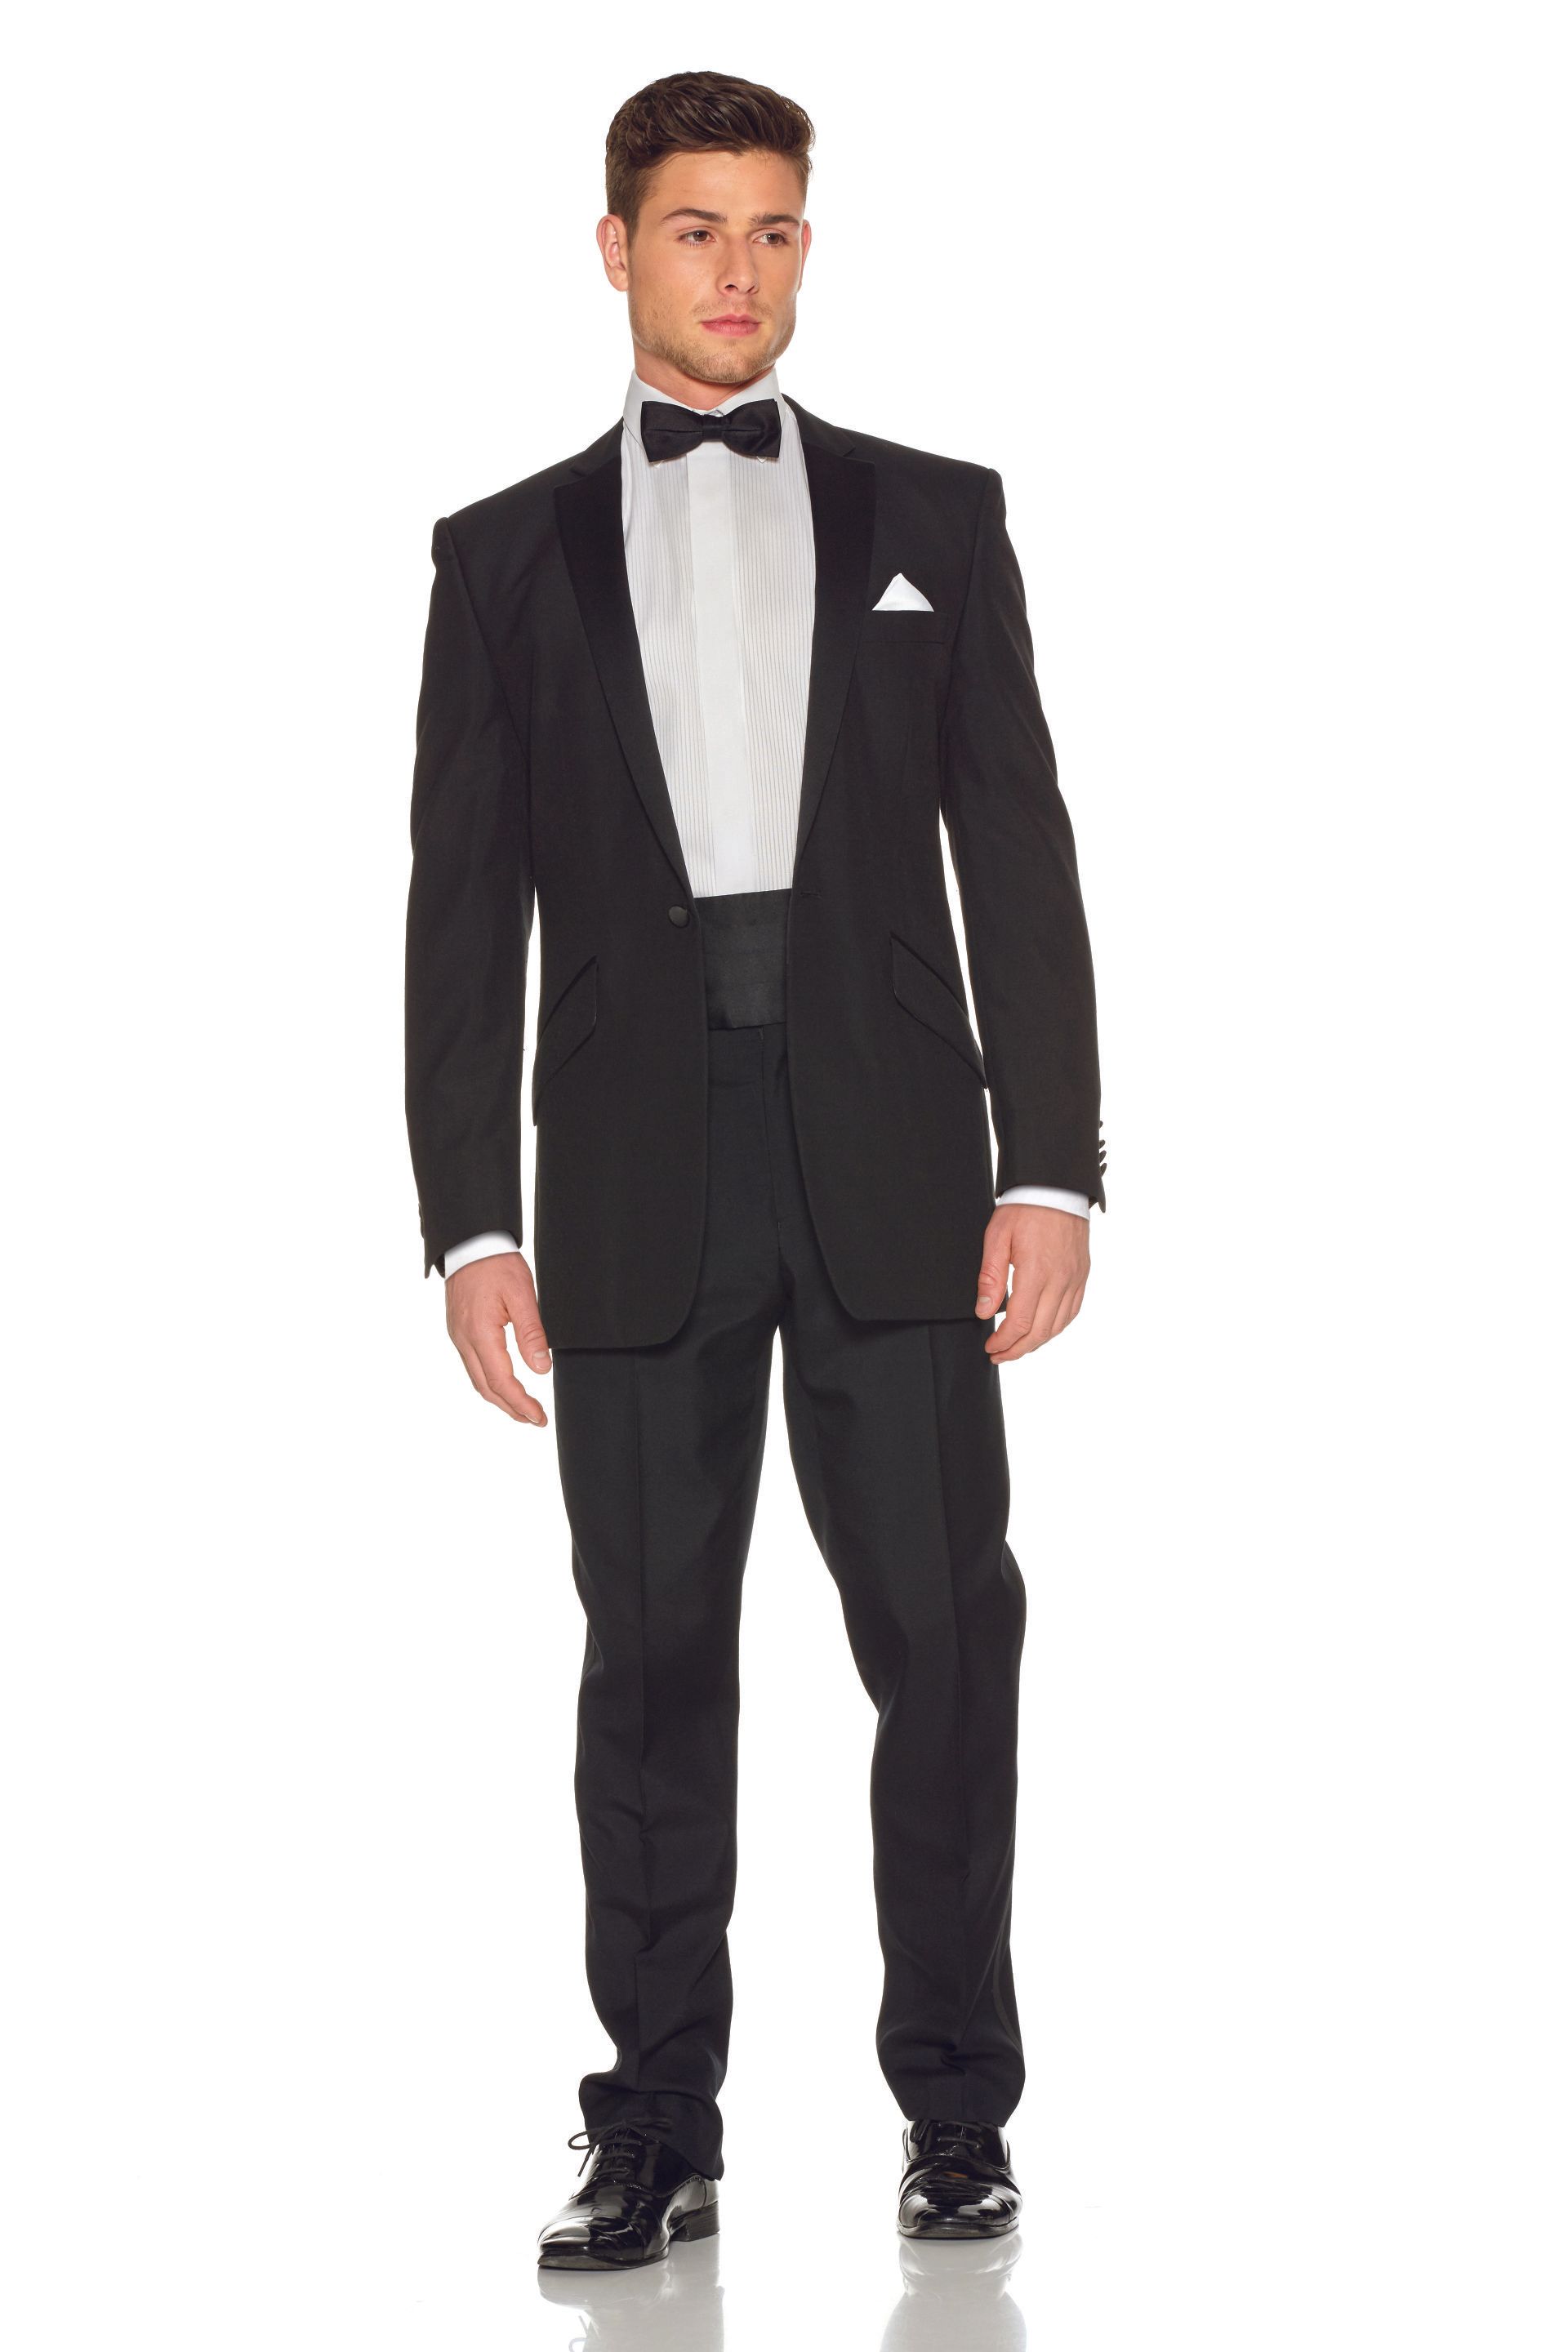 Yorkshire Formal Wear | Formal suit Hire | Tuxedo | Formal Wear